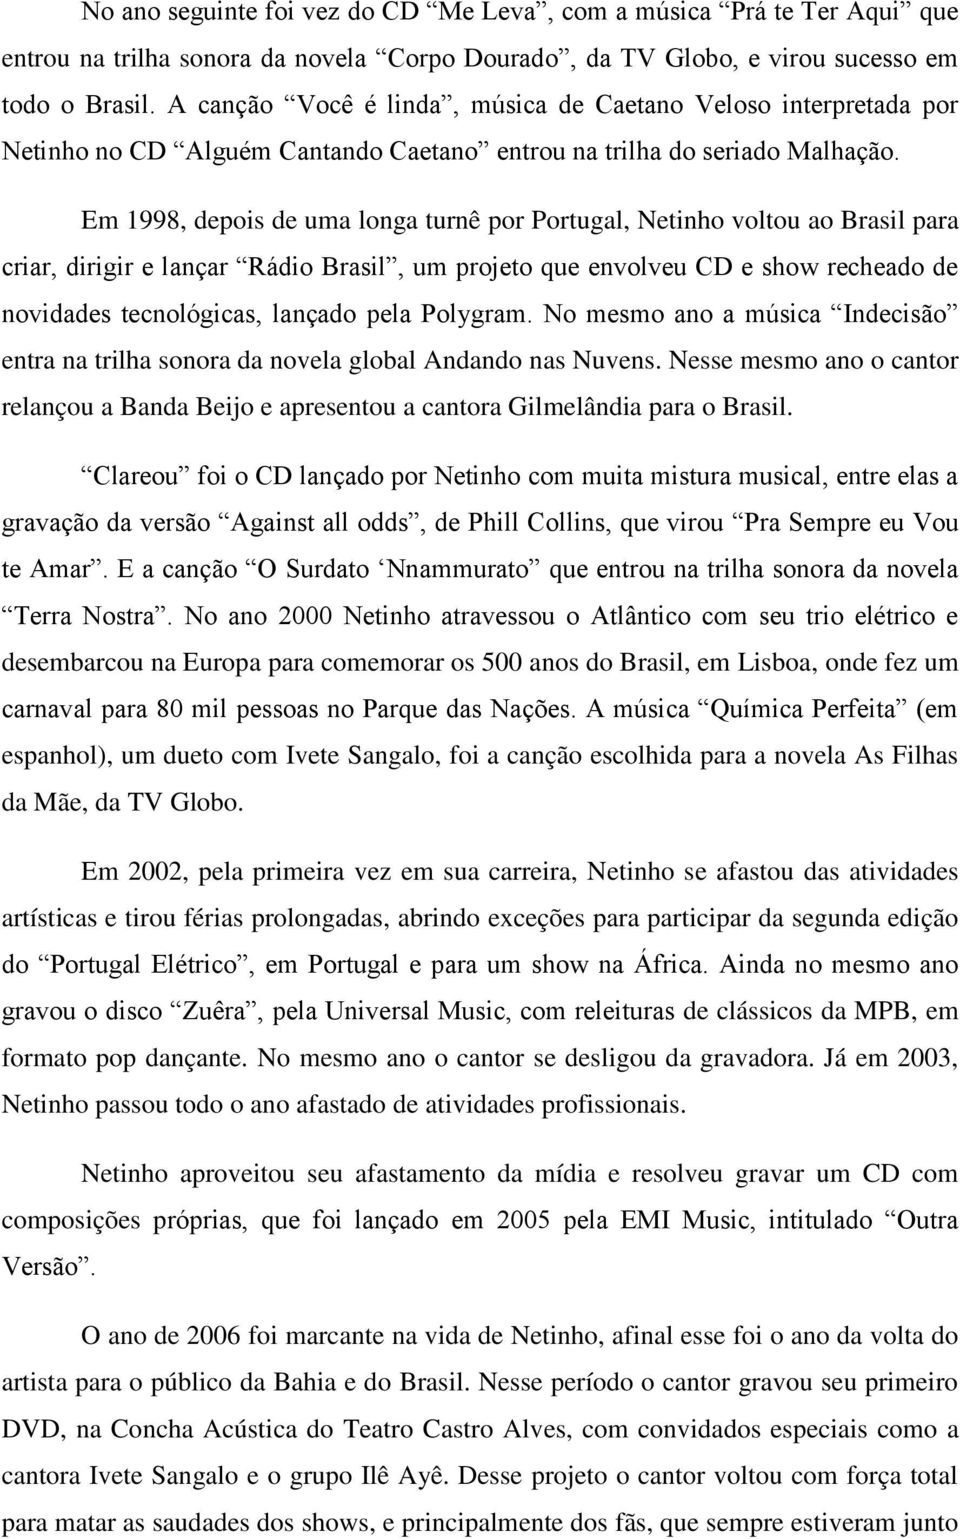 Em 1998, depois de uma longa turnê por Portugal, Netinho voltou ao Brasil para criar, dirigir e lançar Rádio Brasil, um projeto que envolveu CD e show recheado de novidades tecnológicas, lançado pela